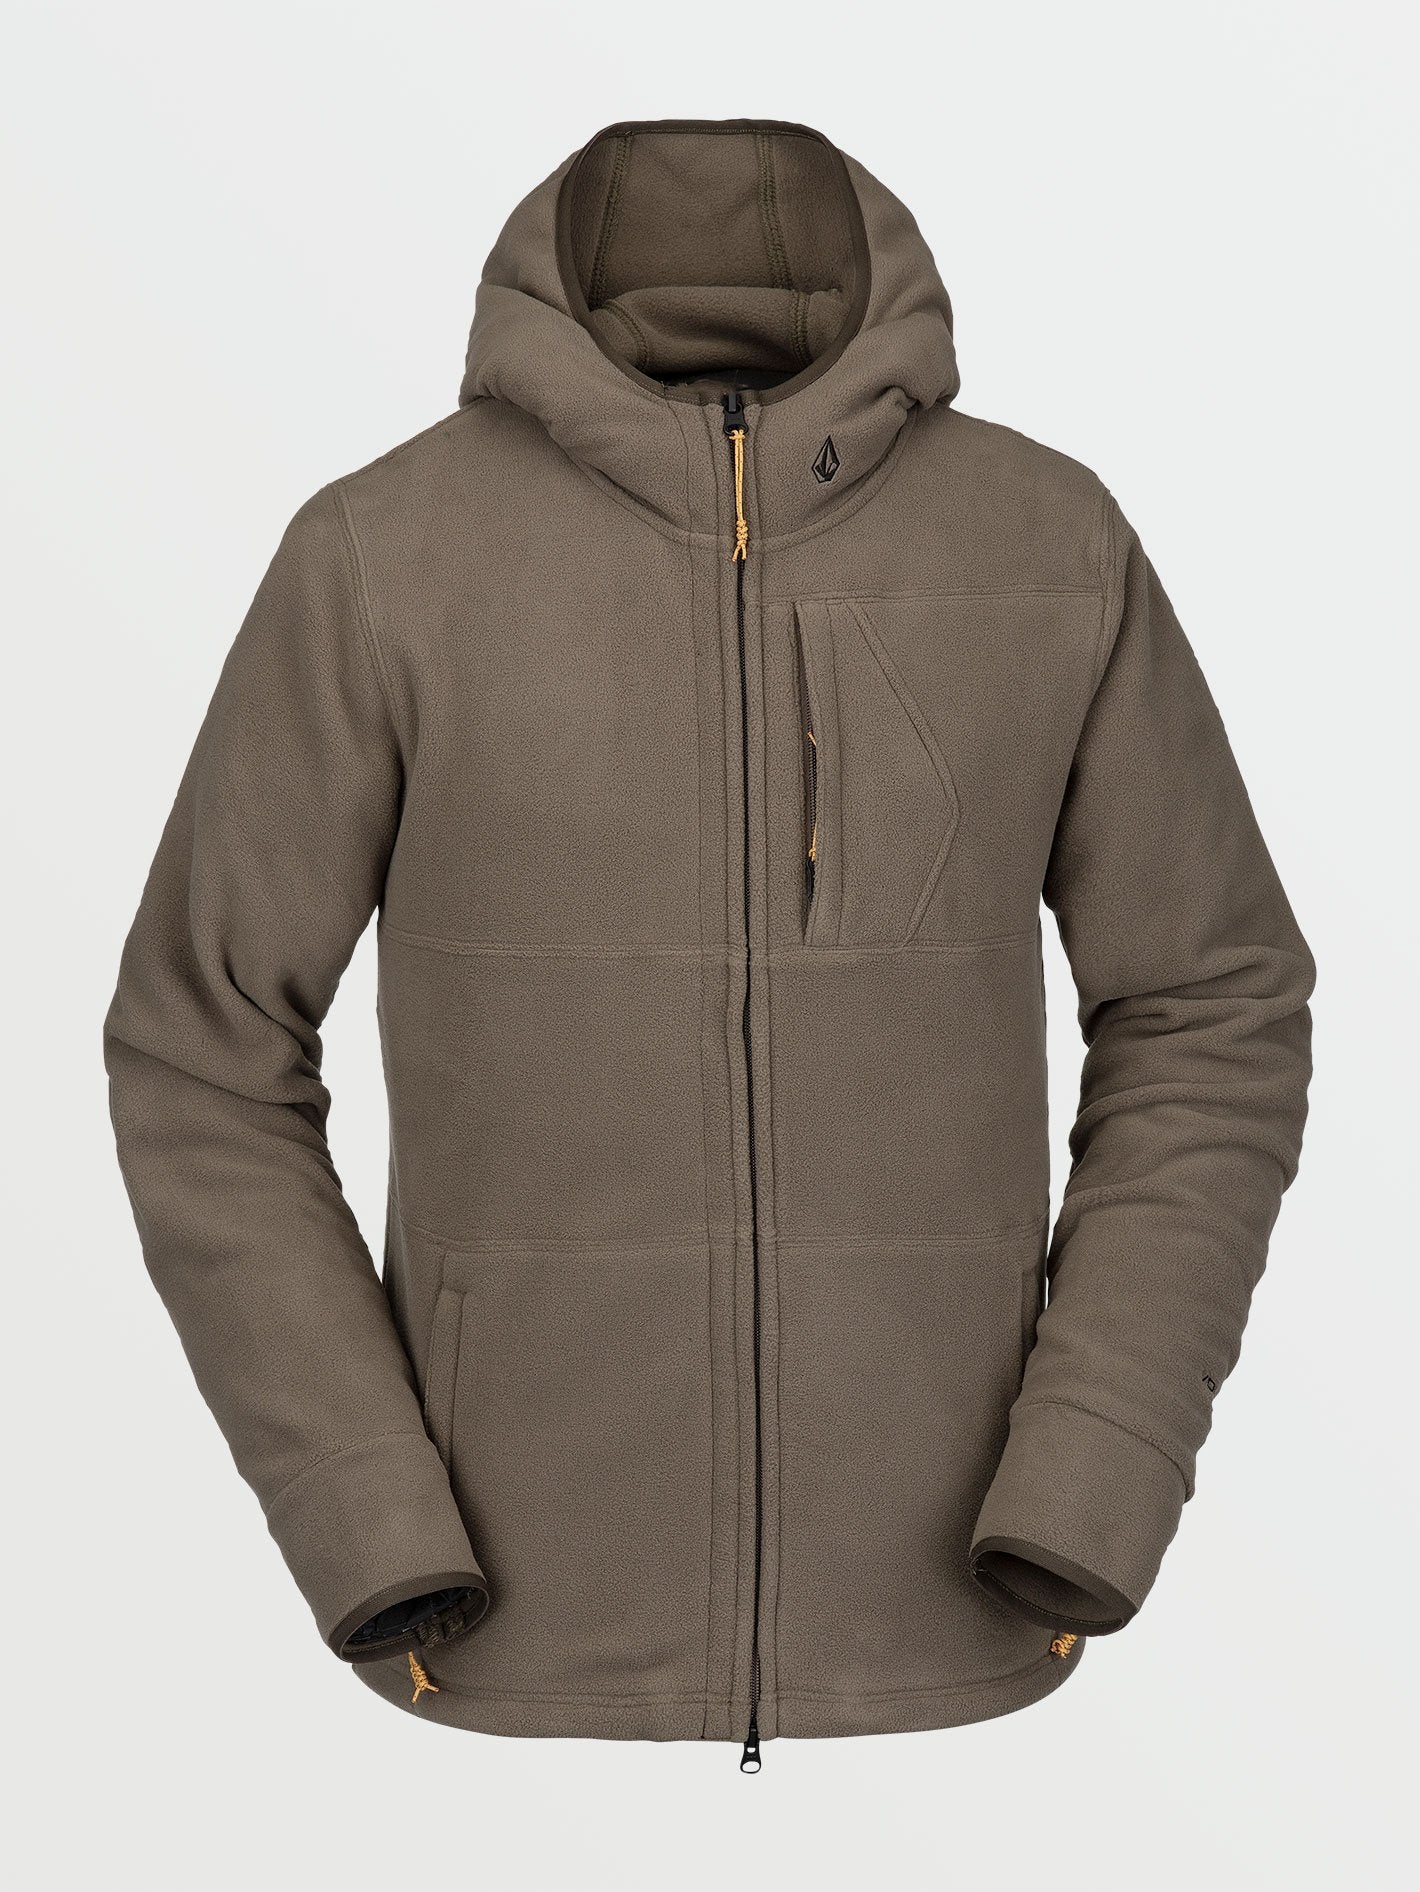 AOS Tactical Polartec Fleece Full Zip Jacket Tan 499 USA Made